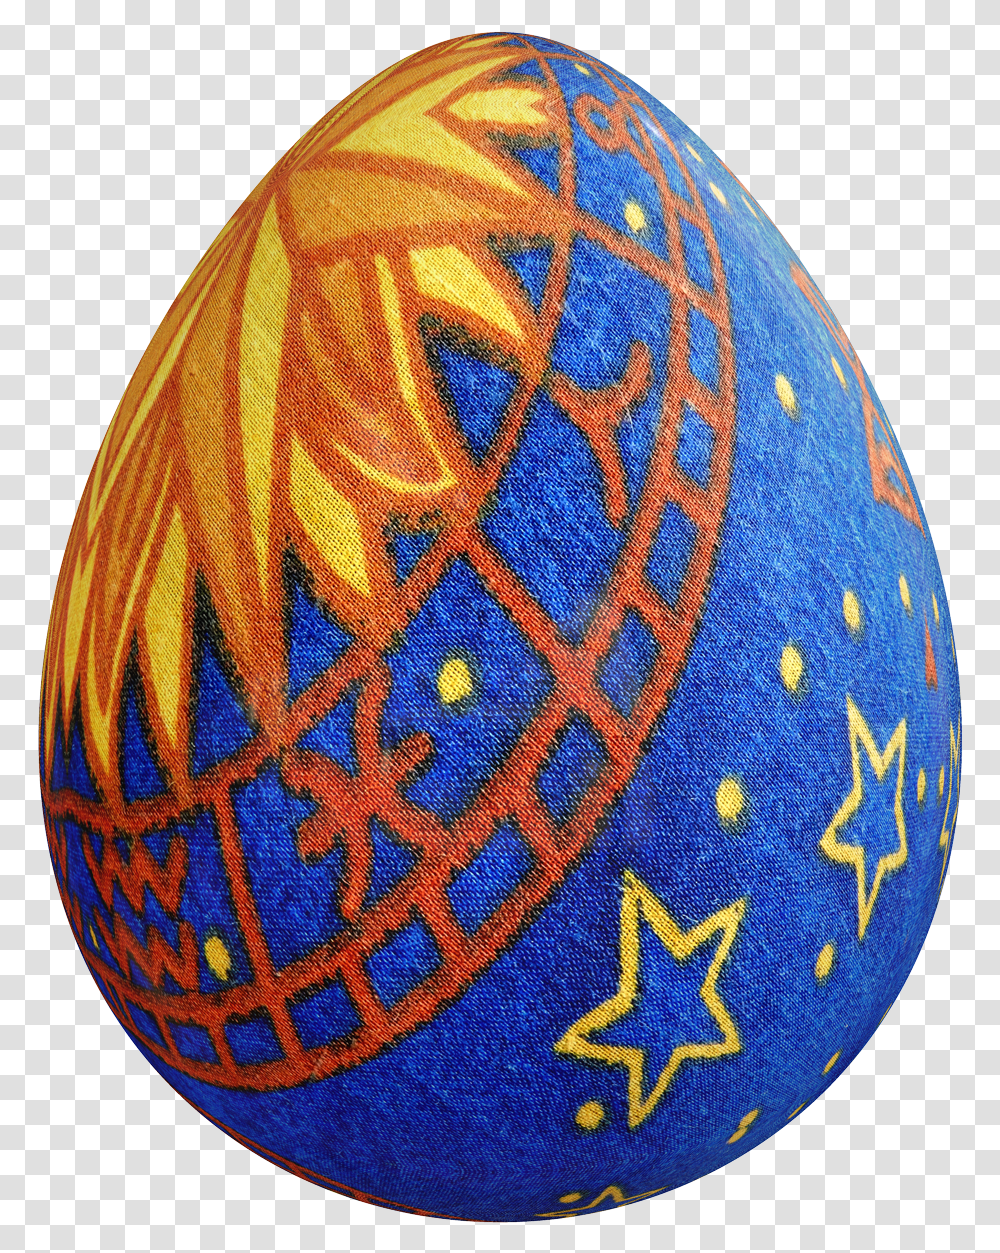 Easter Egg Image Really Easter Eggs, Food, Rug, Baseball Cap, Hat Transparent Png